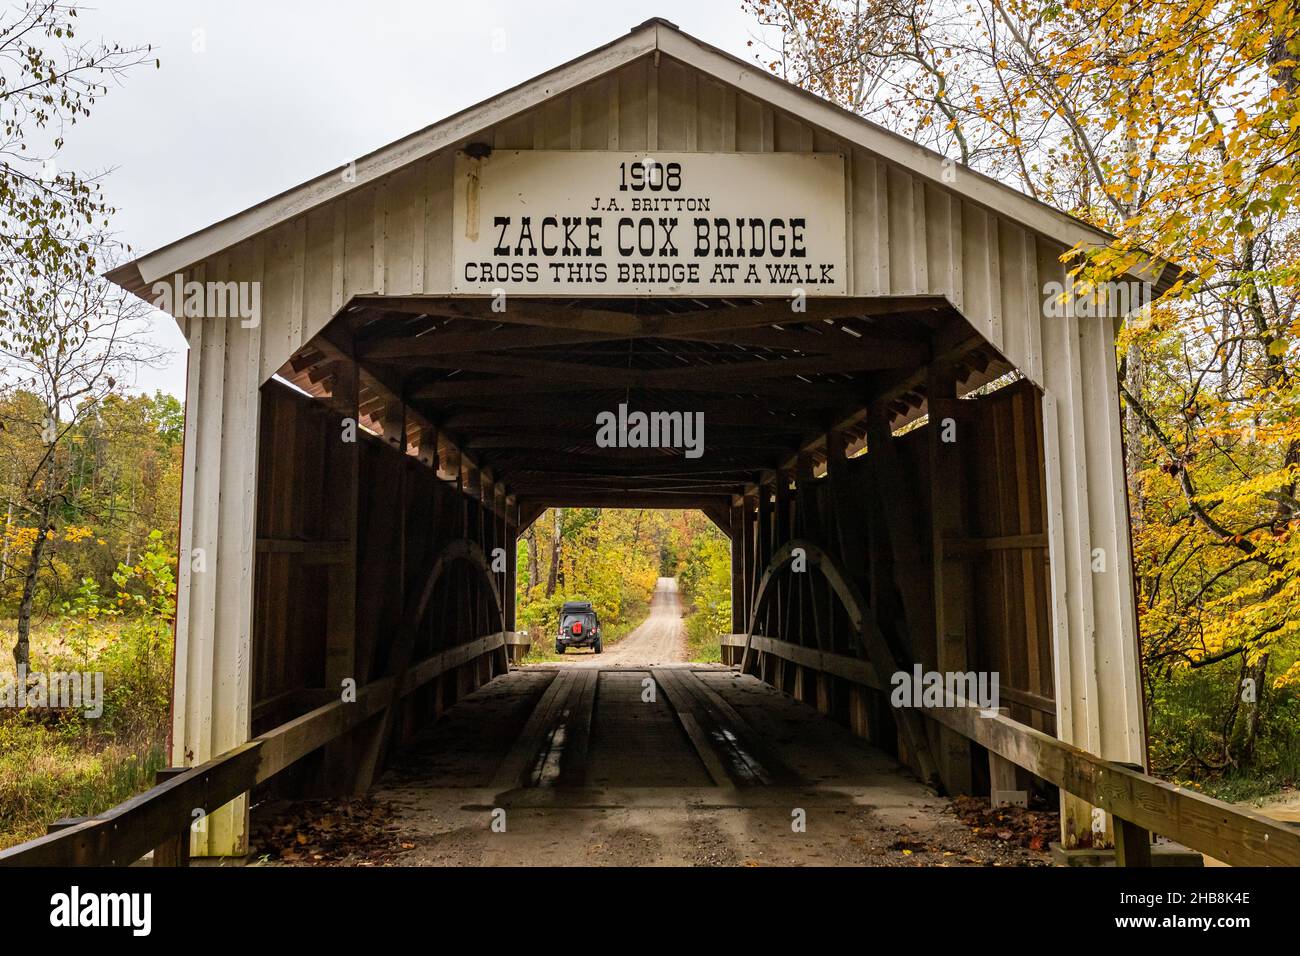 Die Zacke Cox Covered Bridge überquert den Rock Run Creek während des Herbstblatts in der Nähe von Rockville im Parke County, Indiana. Stockfoto